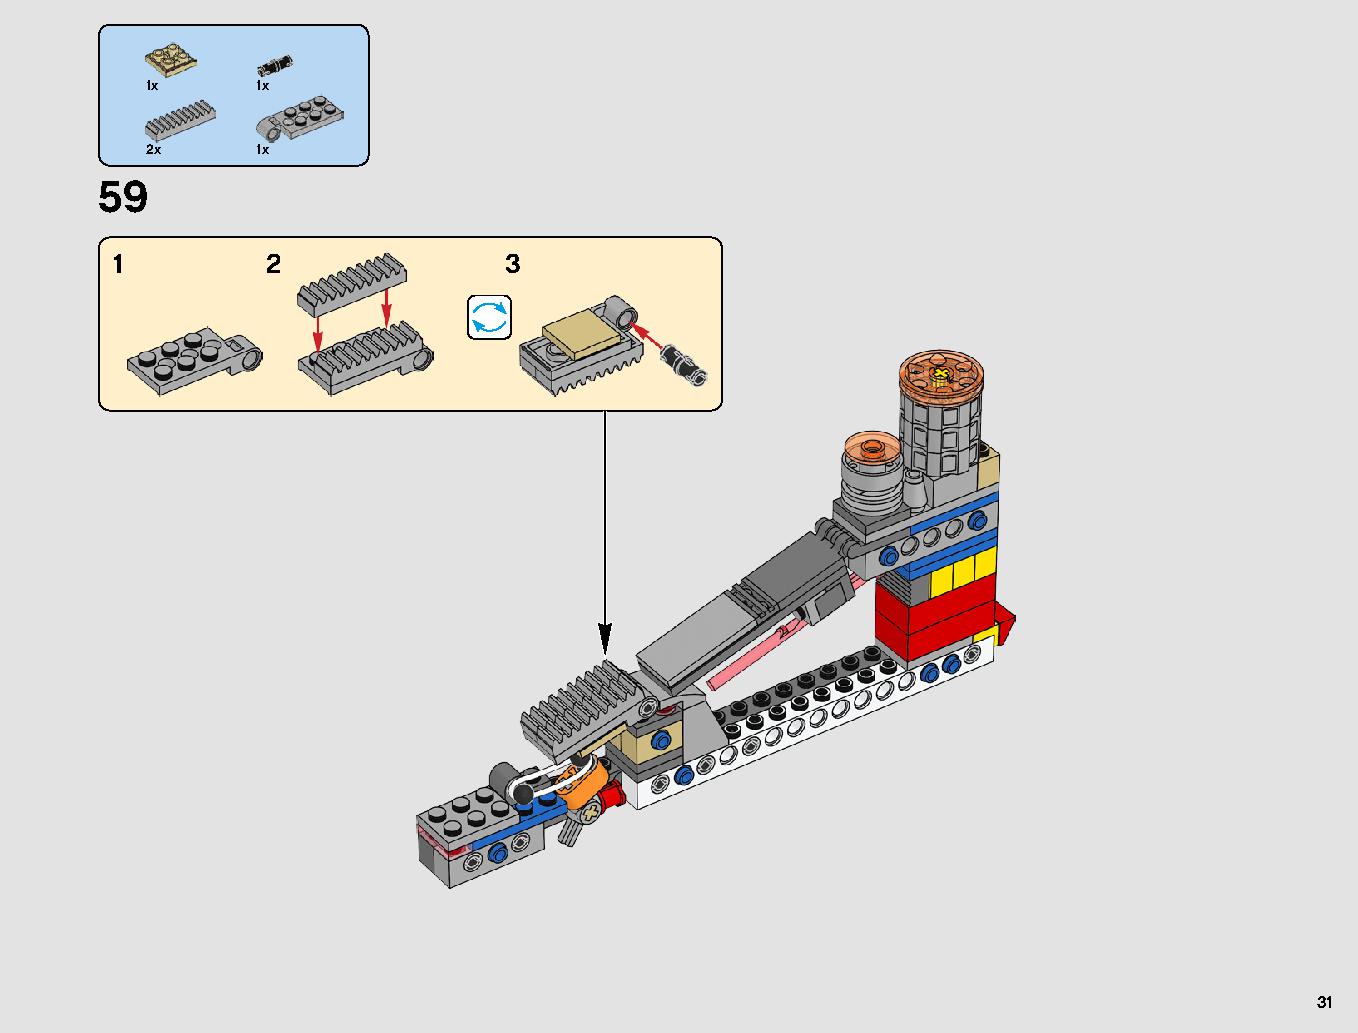 レジスタンス・ボマー 75188 レゴの商品情報 レゴの説明書・組立方法 31 page